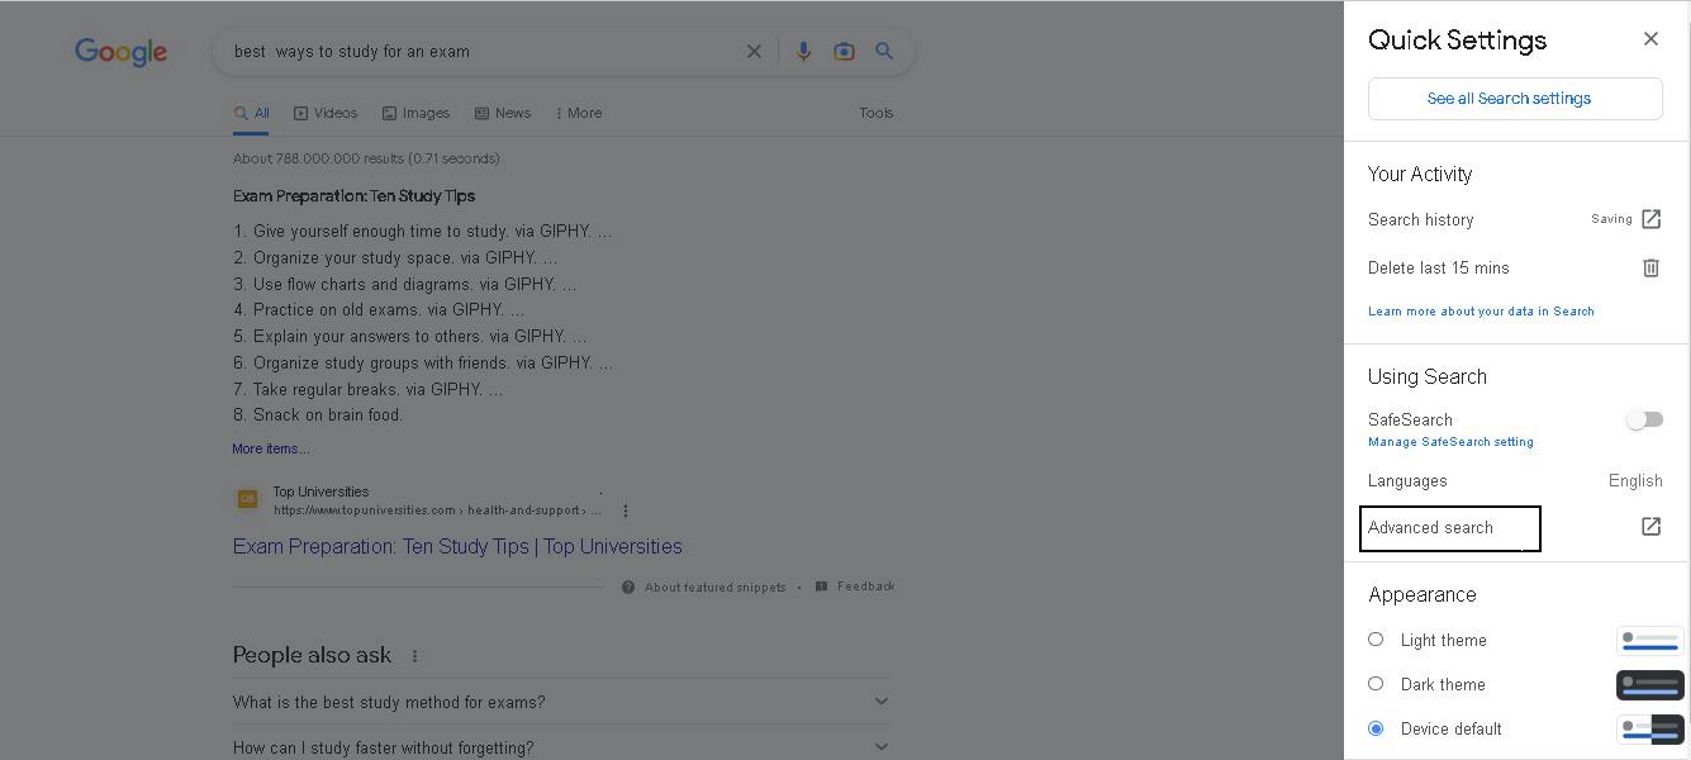 Screenshot showing drop down menu for advanced search